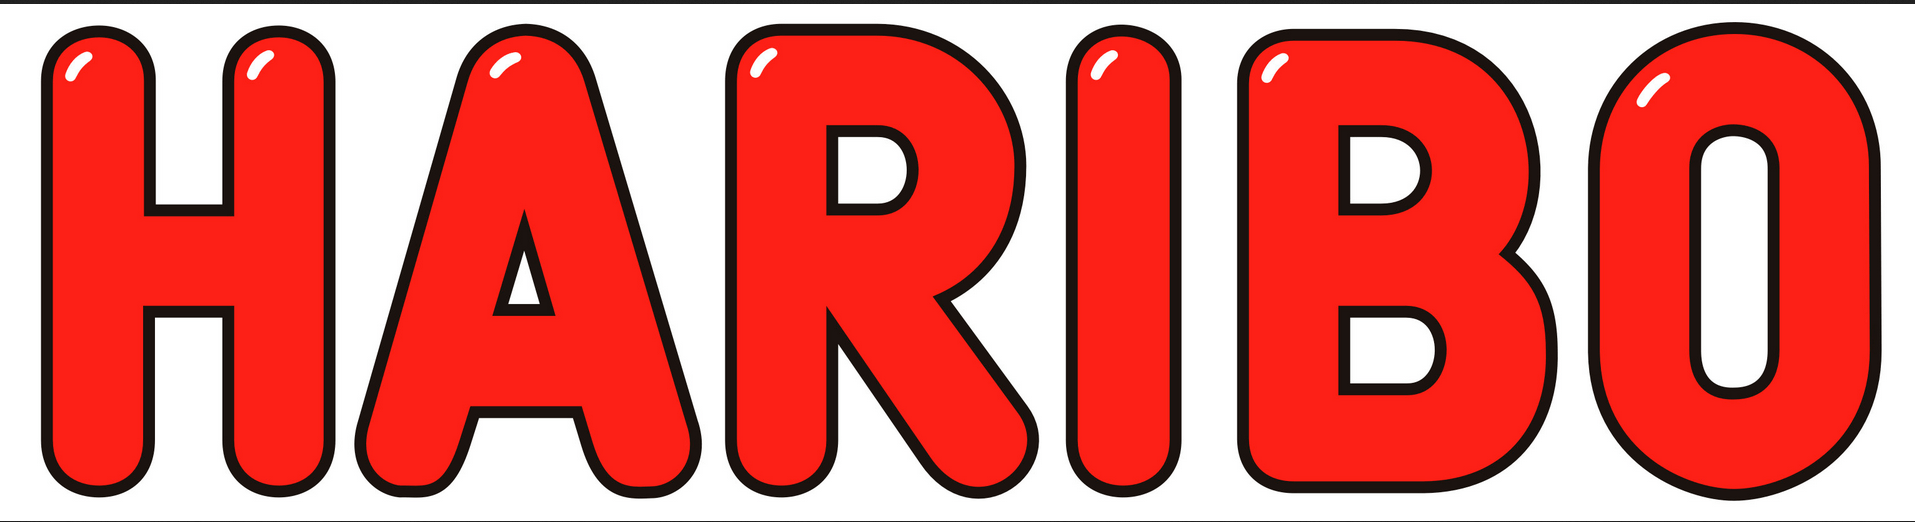 Haribo Logo - Index of /wp-content/uploads/2015/02